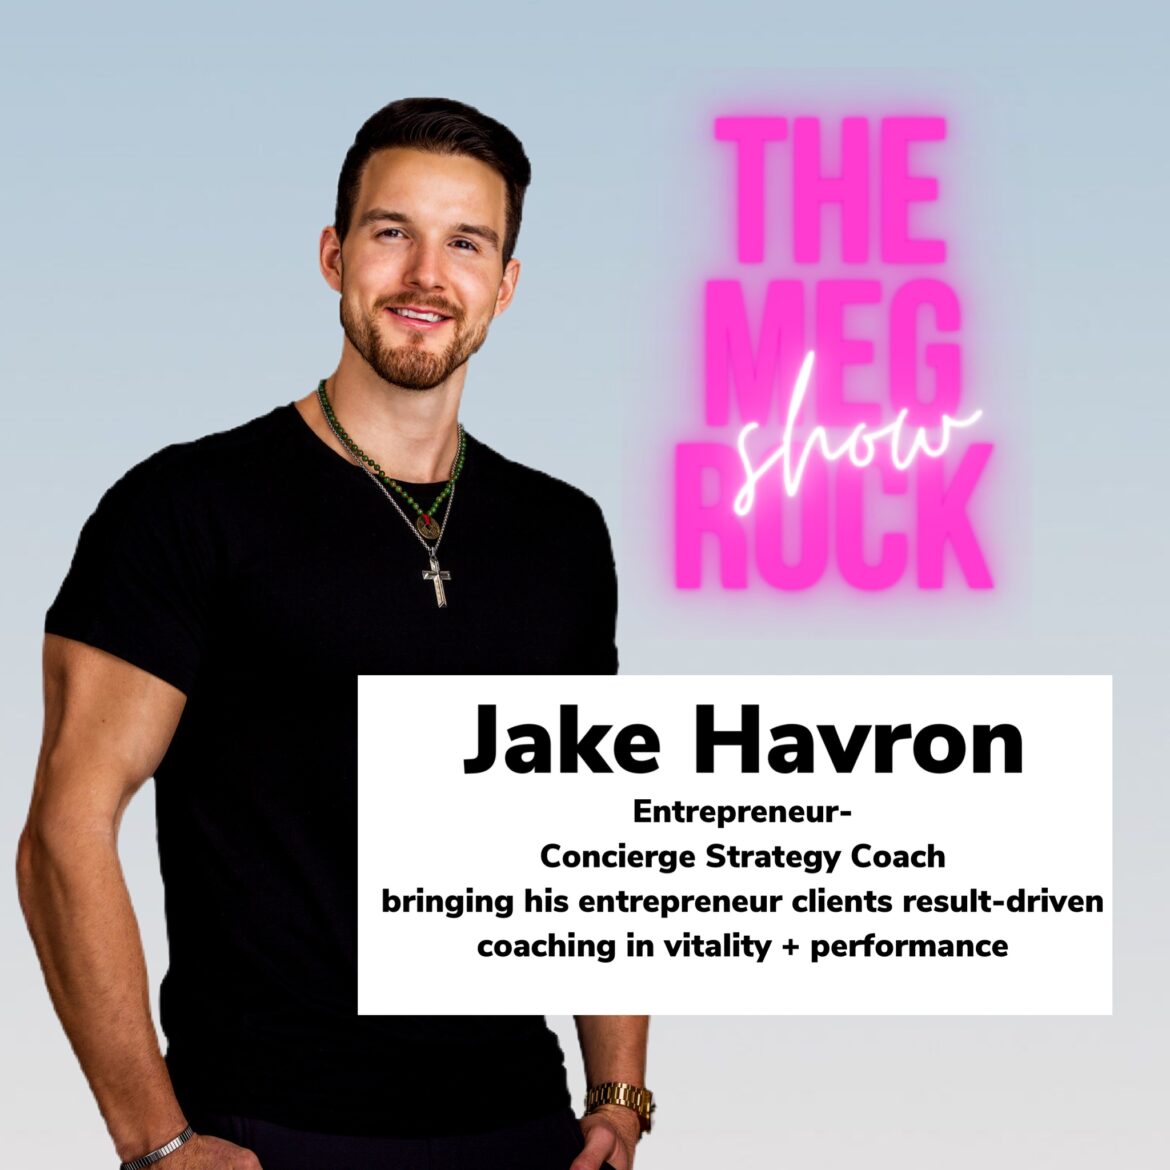 Jake Havron